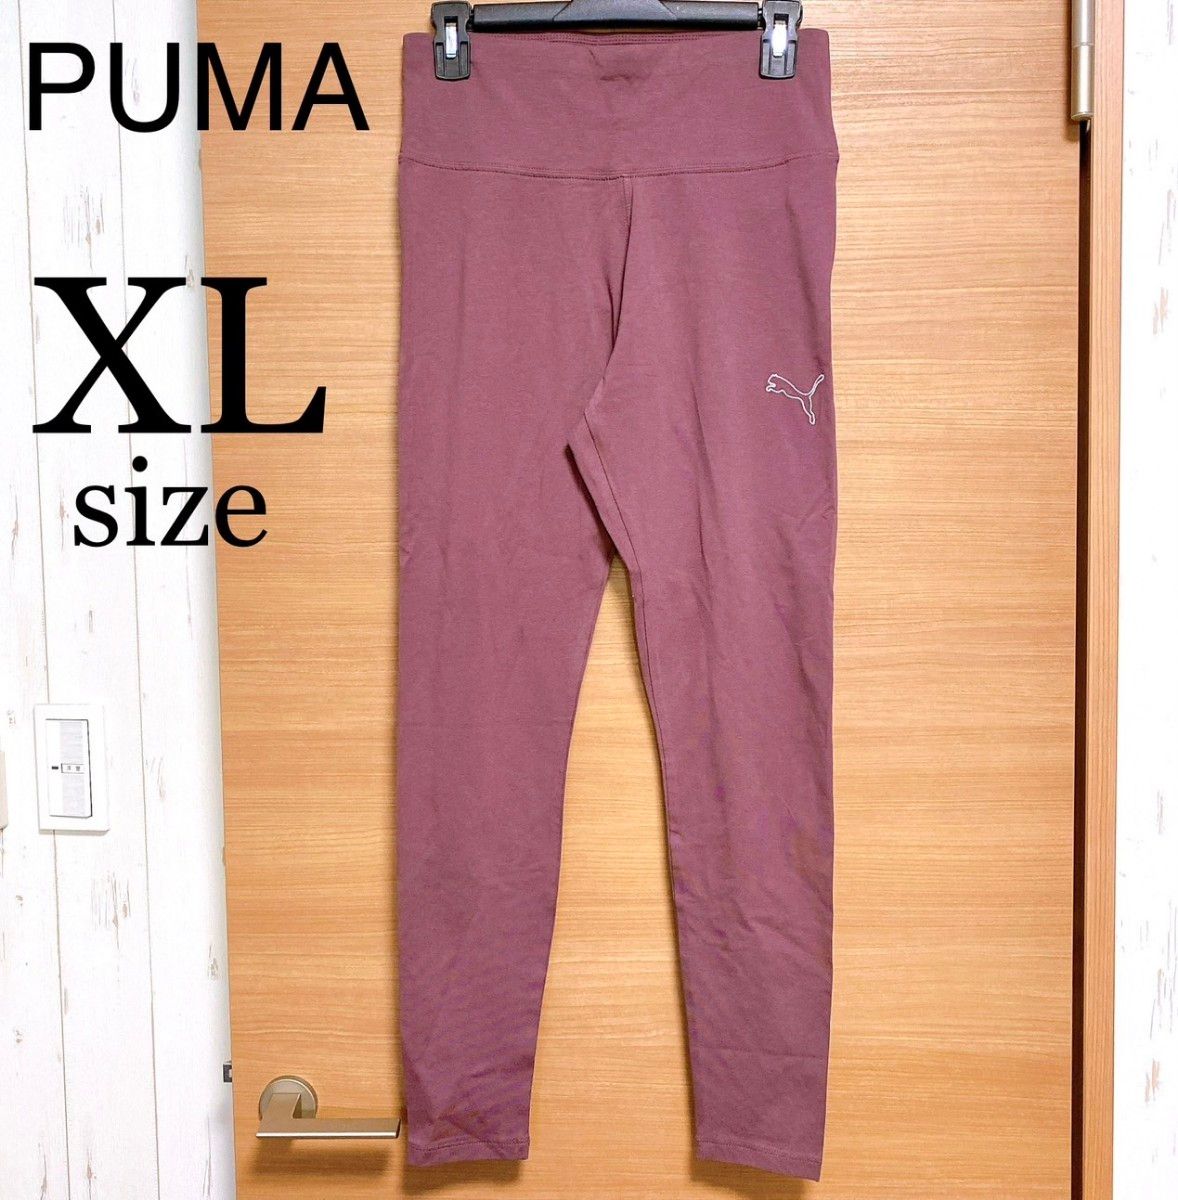 レギンス レディース プーマ PUMA LL XL 大きいサイズ プラム 紫 スパッツ ヨガ フィットネス 新品 美品 タグ付き